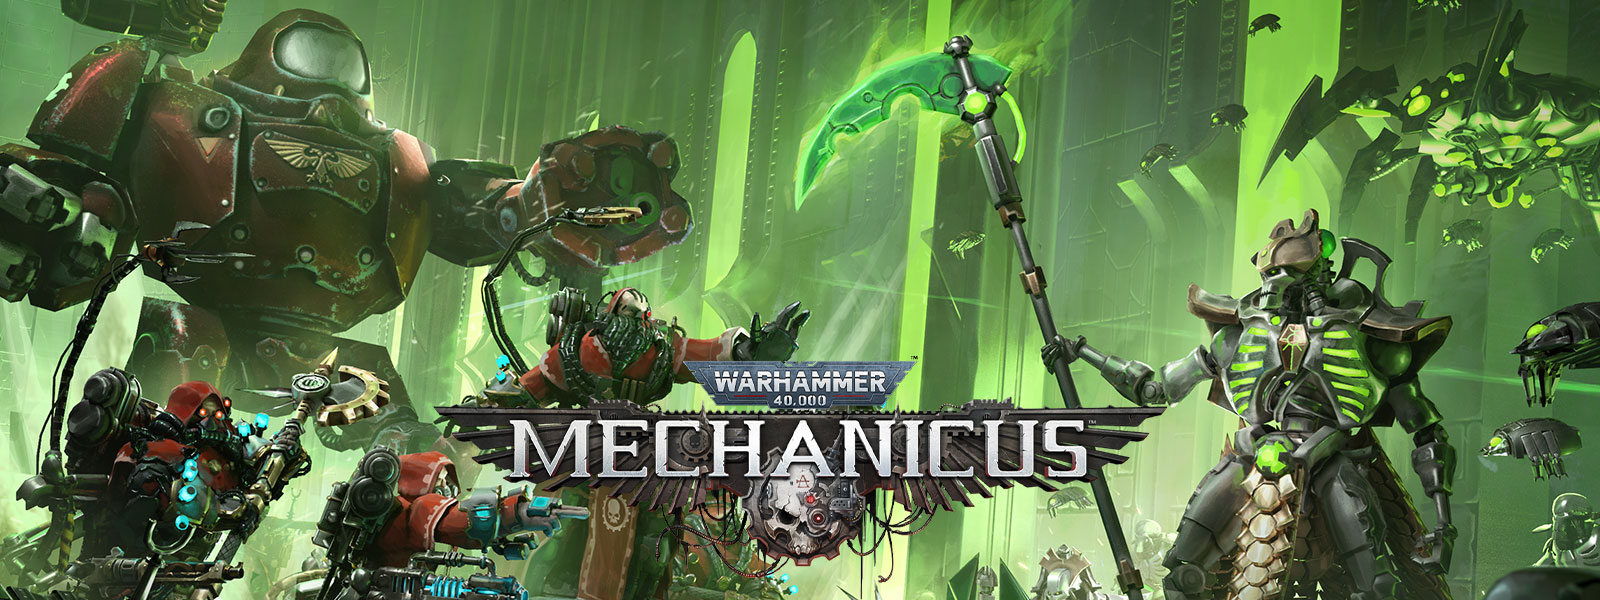 Warhammer 40,000: Mechanicus, des armées high-tech se préparent pour la bataille.